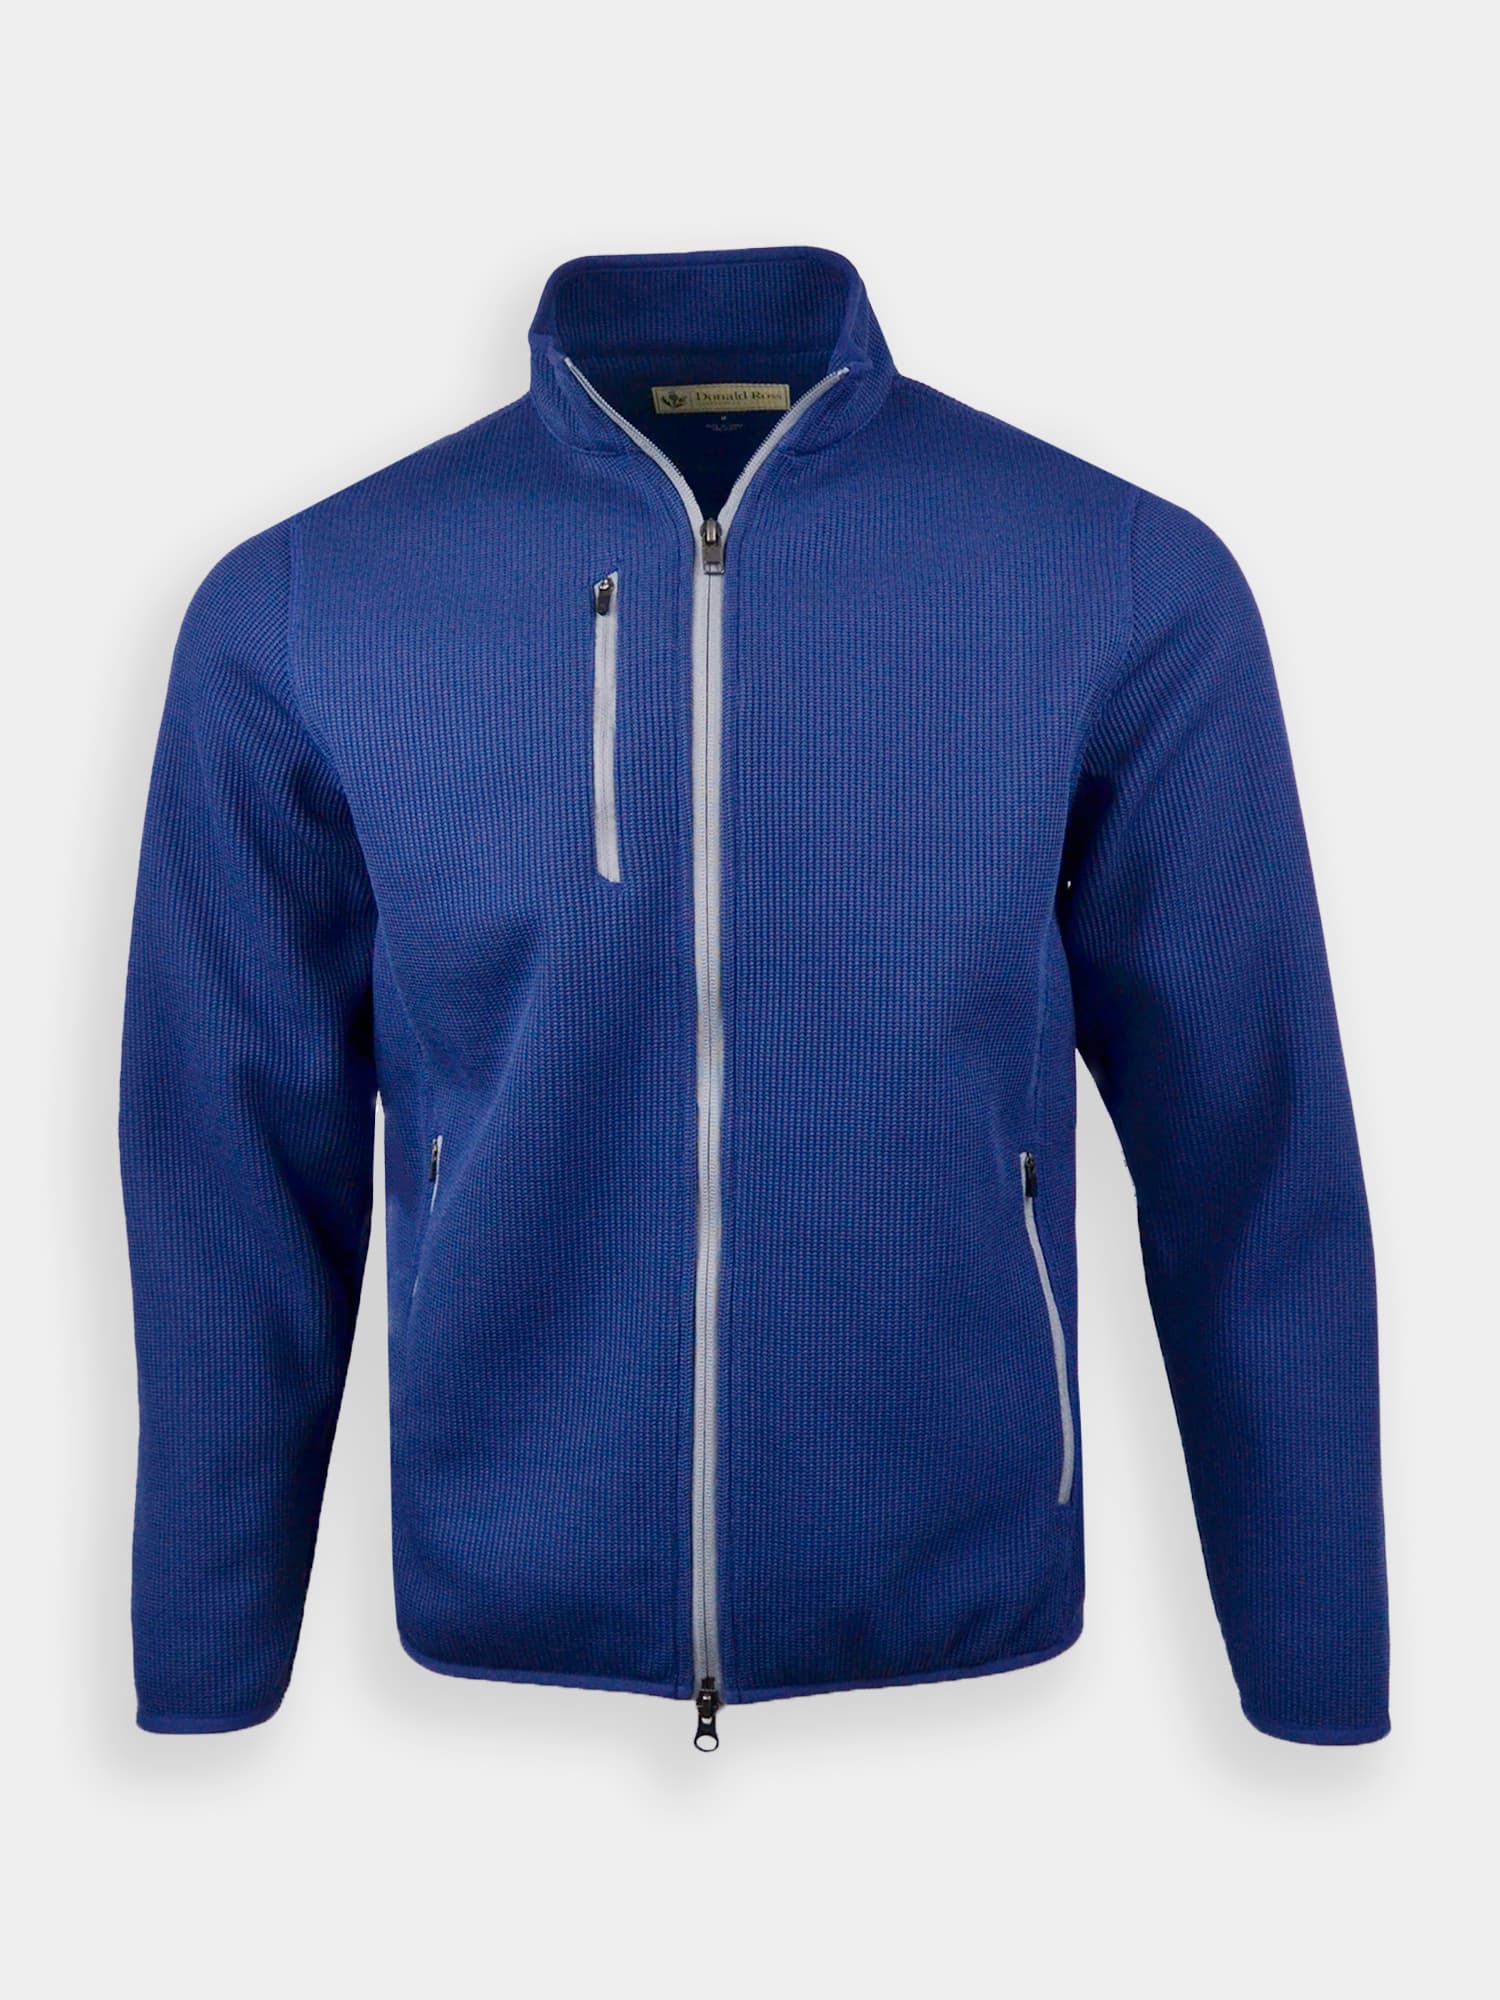 The Lodge Fleece Jacket - Classic Fit - Donald Ross Sportswear